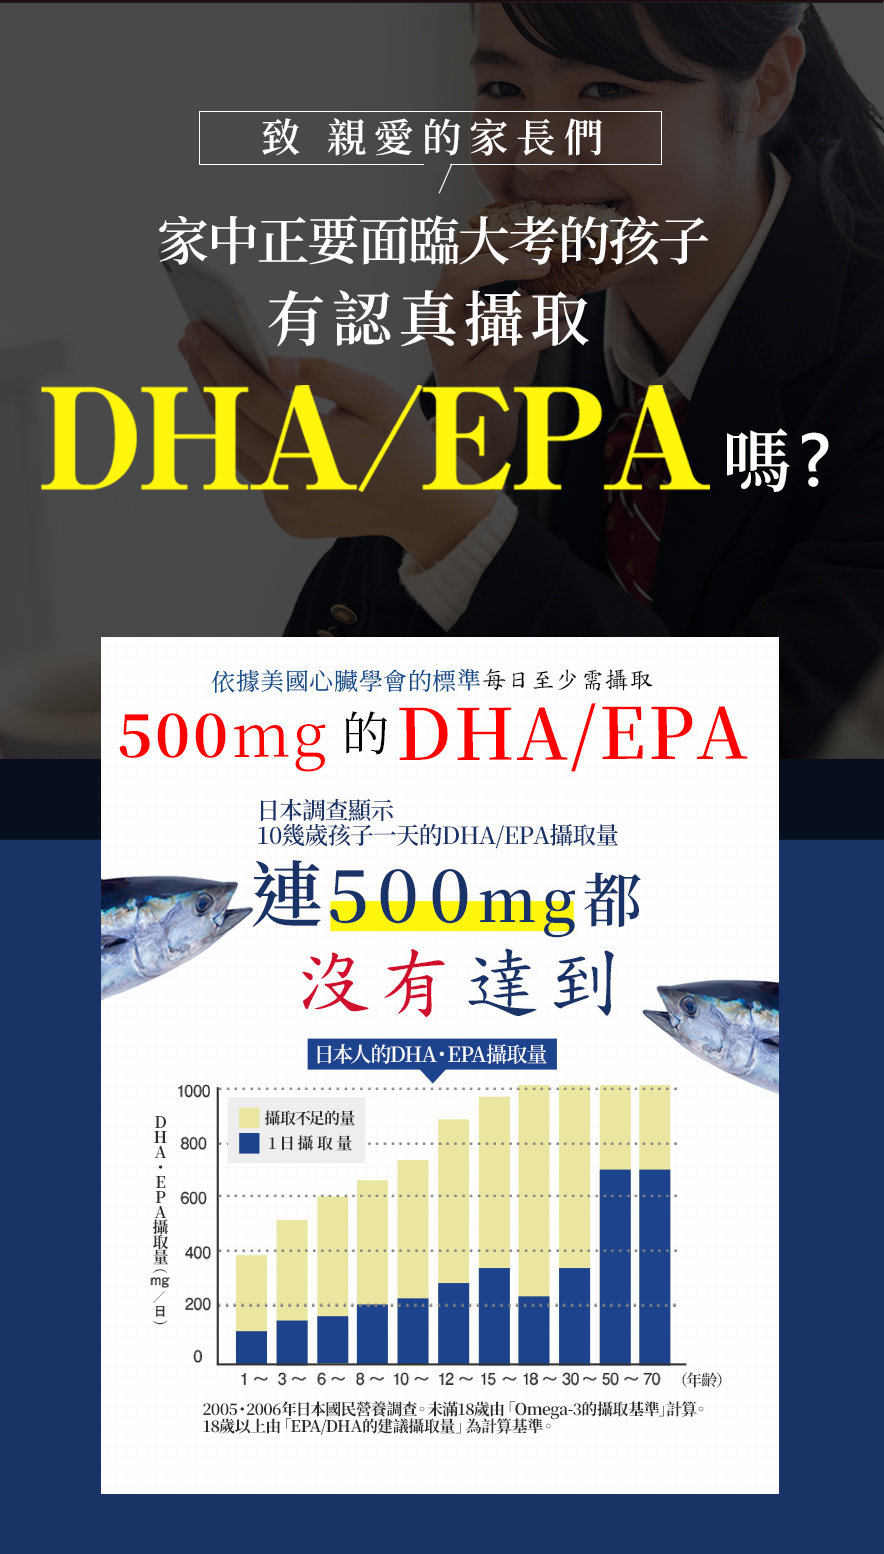 致 親愛的家長們家中正要面臨大考的孩子有認真攝取魚油DHA/EPA 嗎?依據美國心臟學會的標準每日至少需攝取500mg的魚油DHA/EPA日本調查顯示10幾歲孩了一天的DHA/EPA攝取量連500mg都沒有達到